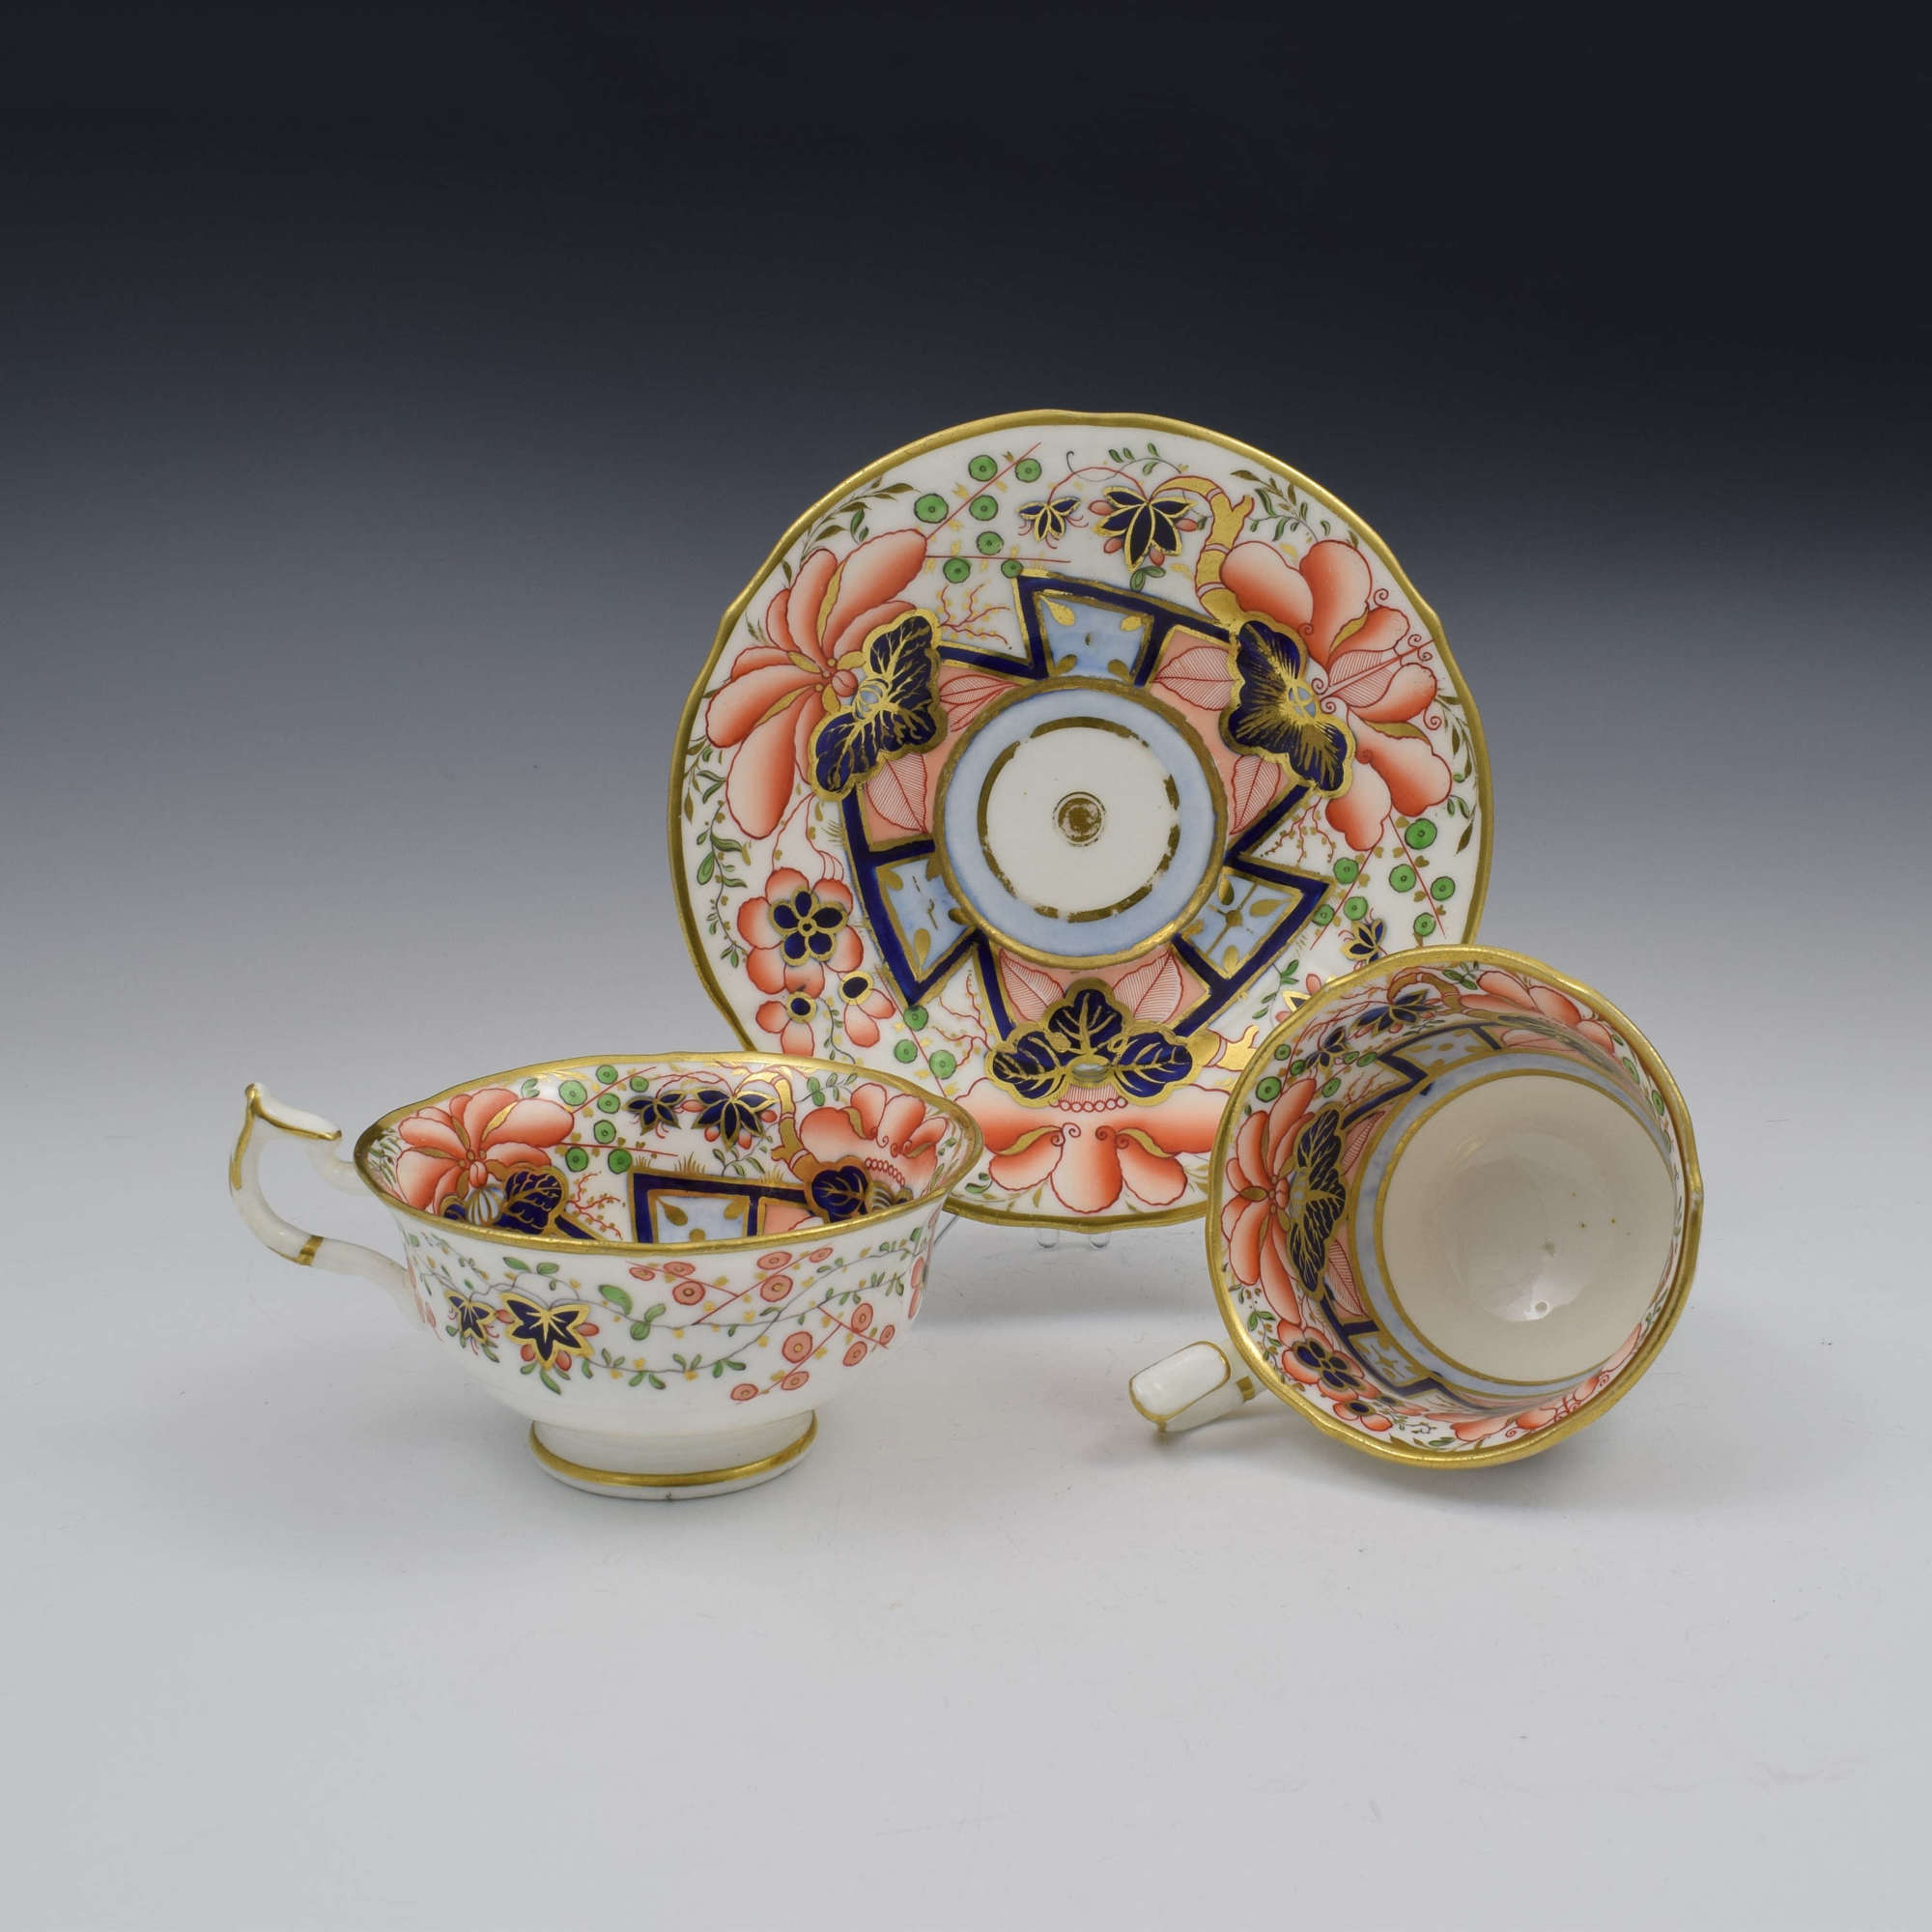 Regency Minton Porcelain Cup & Saucer Trio Pattern 512 c.1830